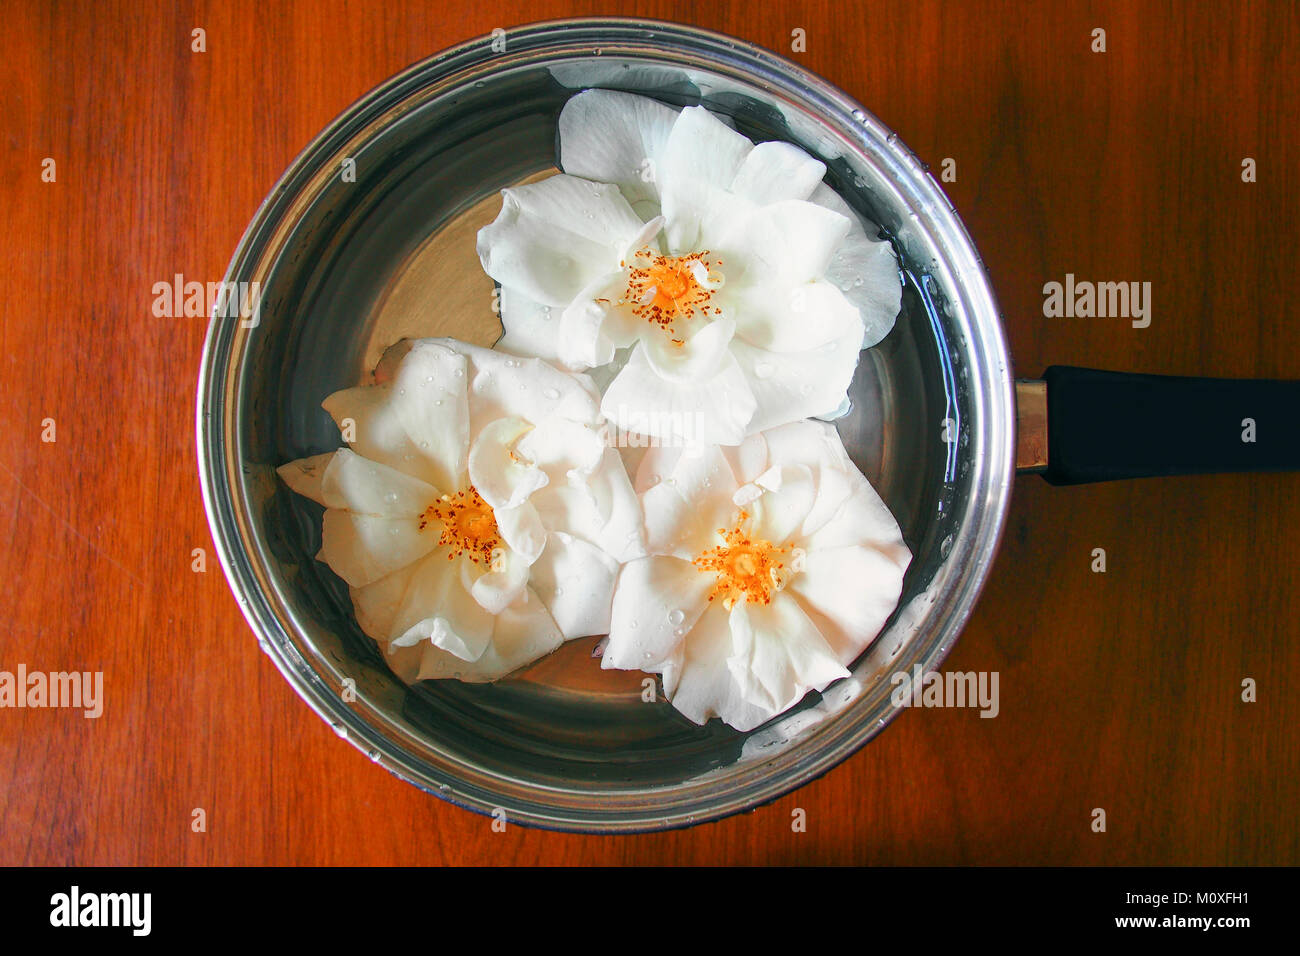 Faire des rose thé, roses blanches dans un pot Banque D'Images